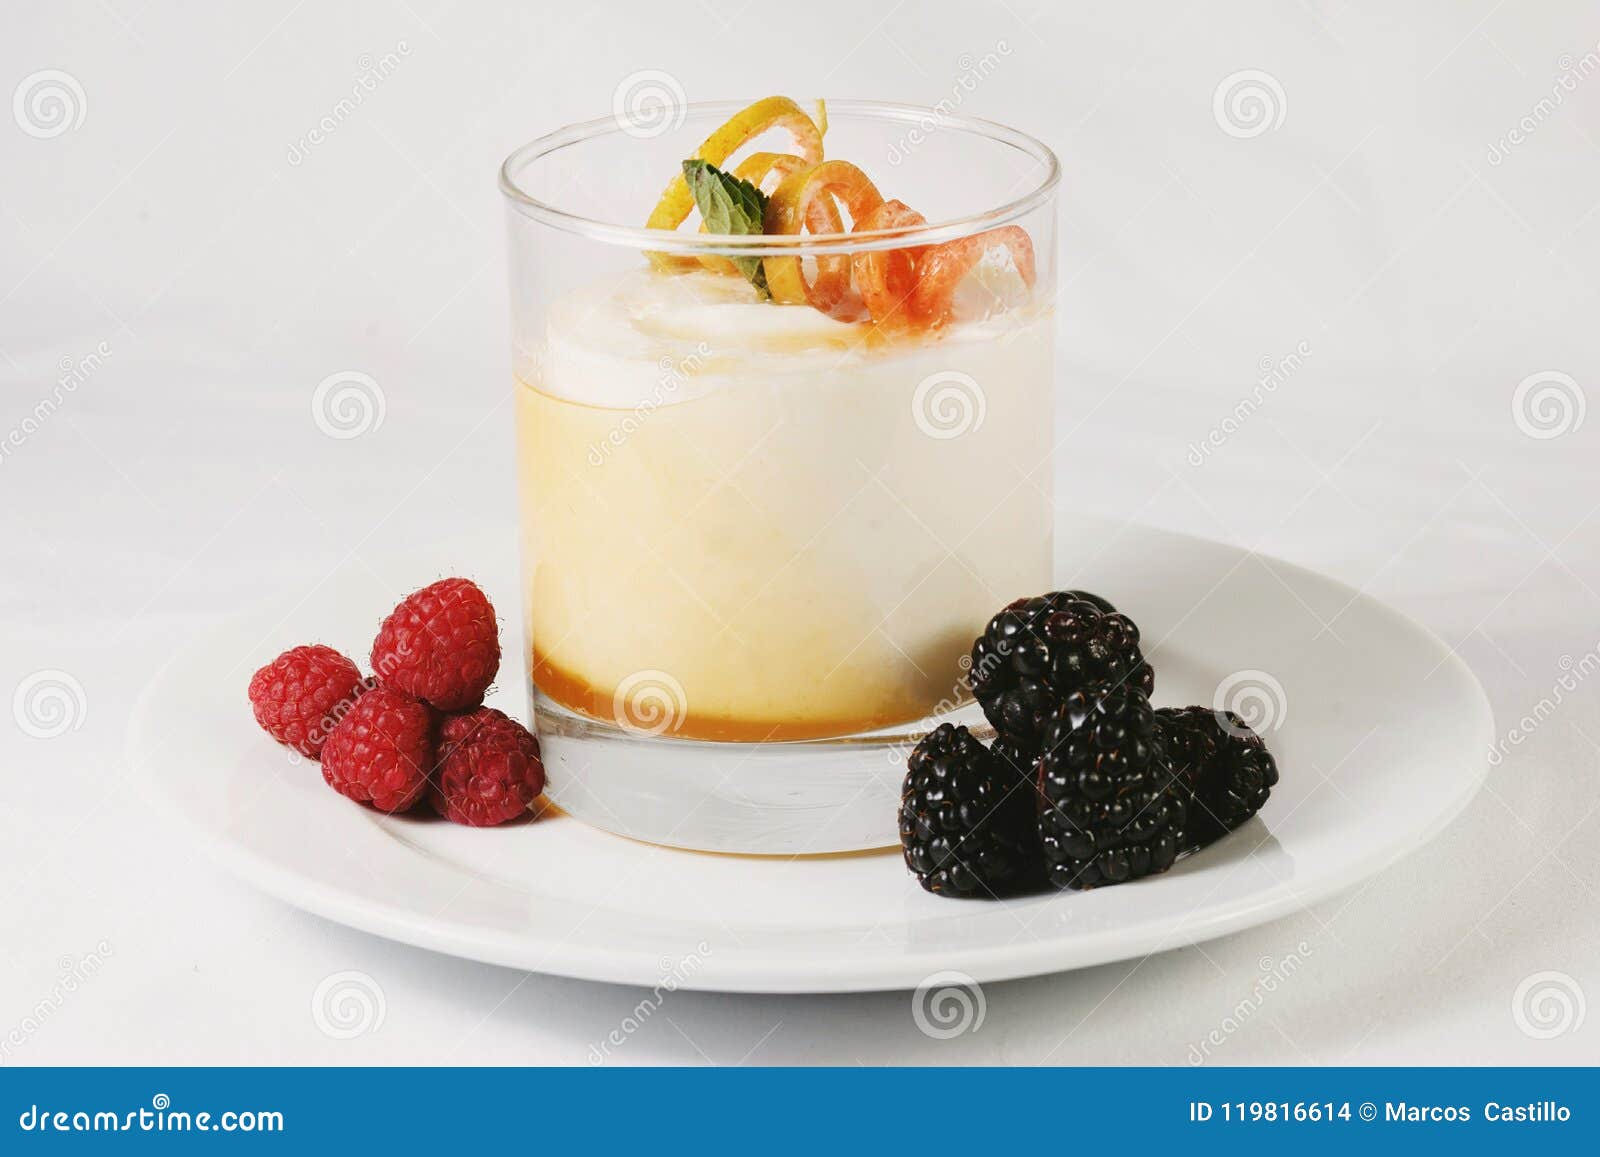 desert, pudding, cream, raspberry and fresh berries